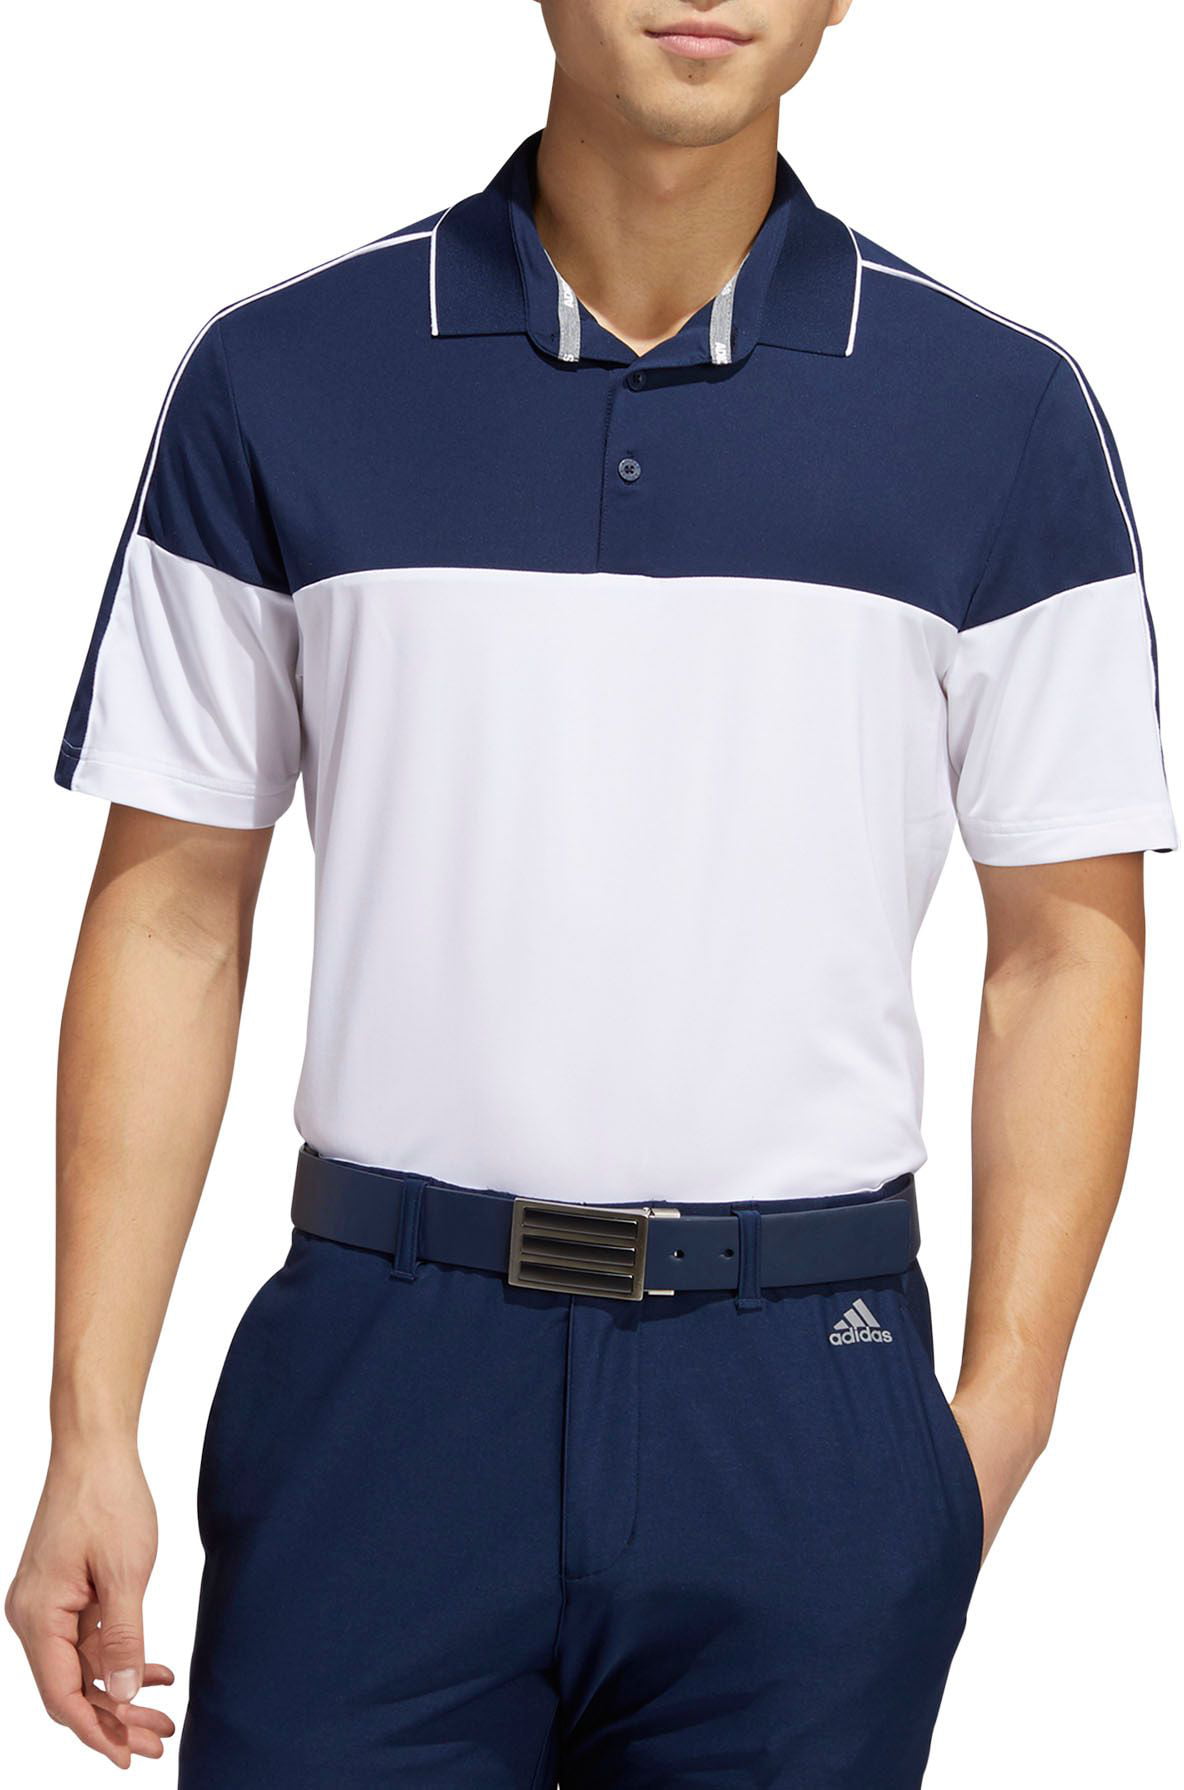 Men's Ultimate365 Striped Golf Polo, Collegiate Navy/White, L - Walmart.com